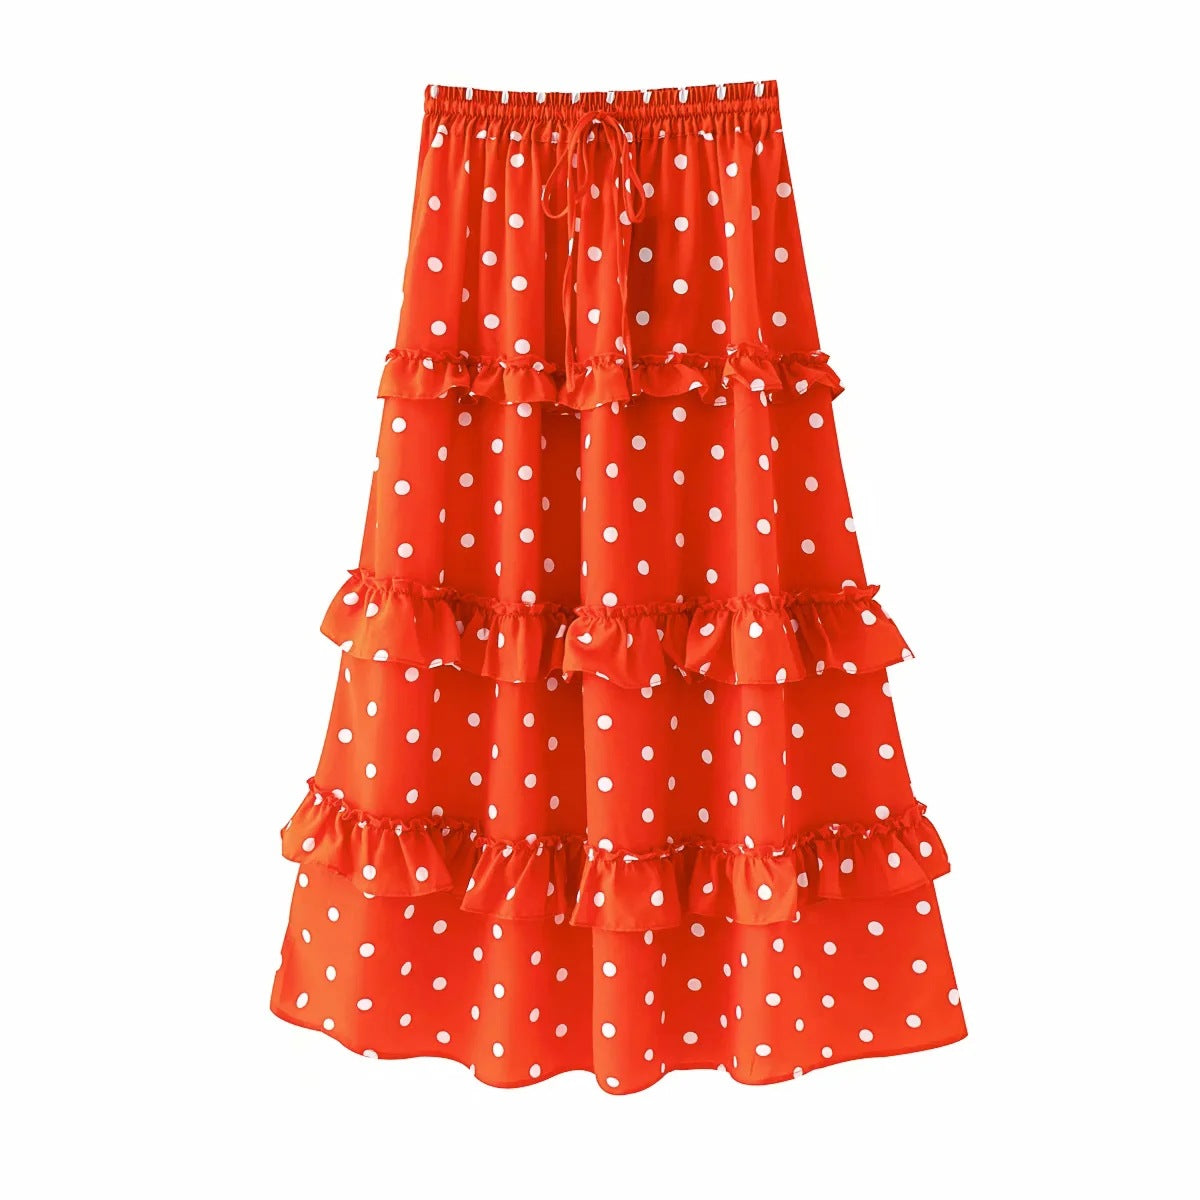 Ruffled polka dot skirt